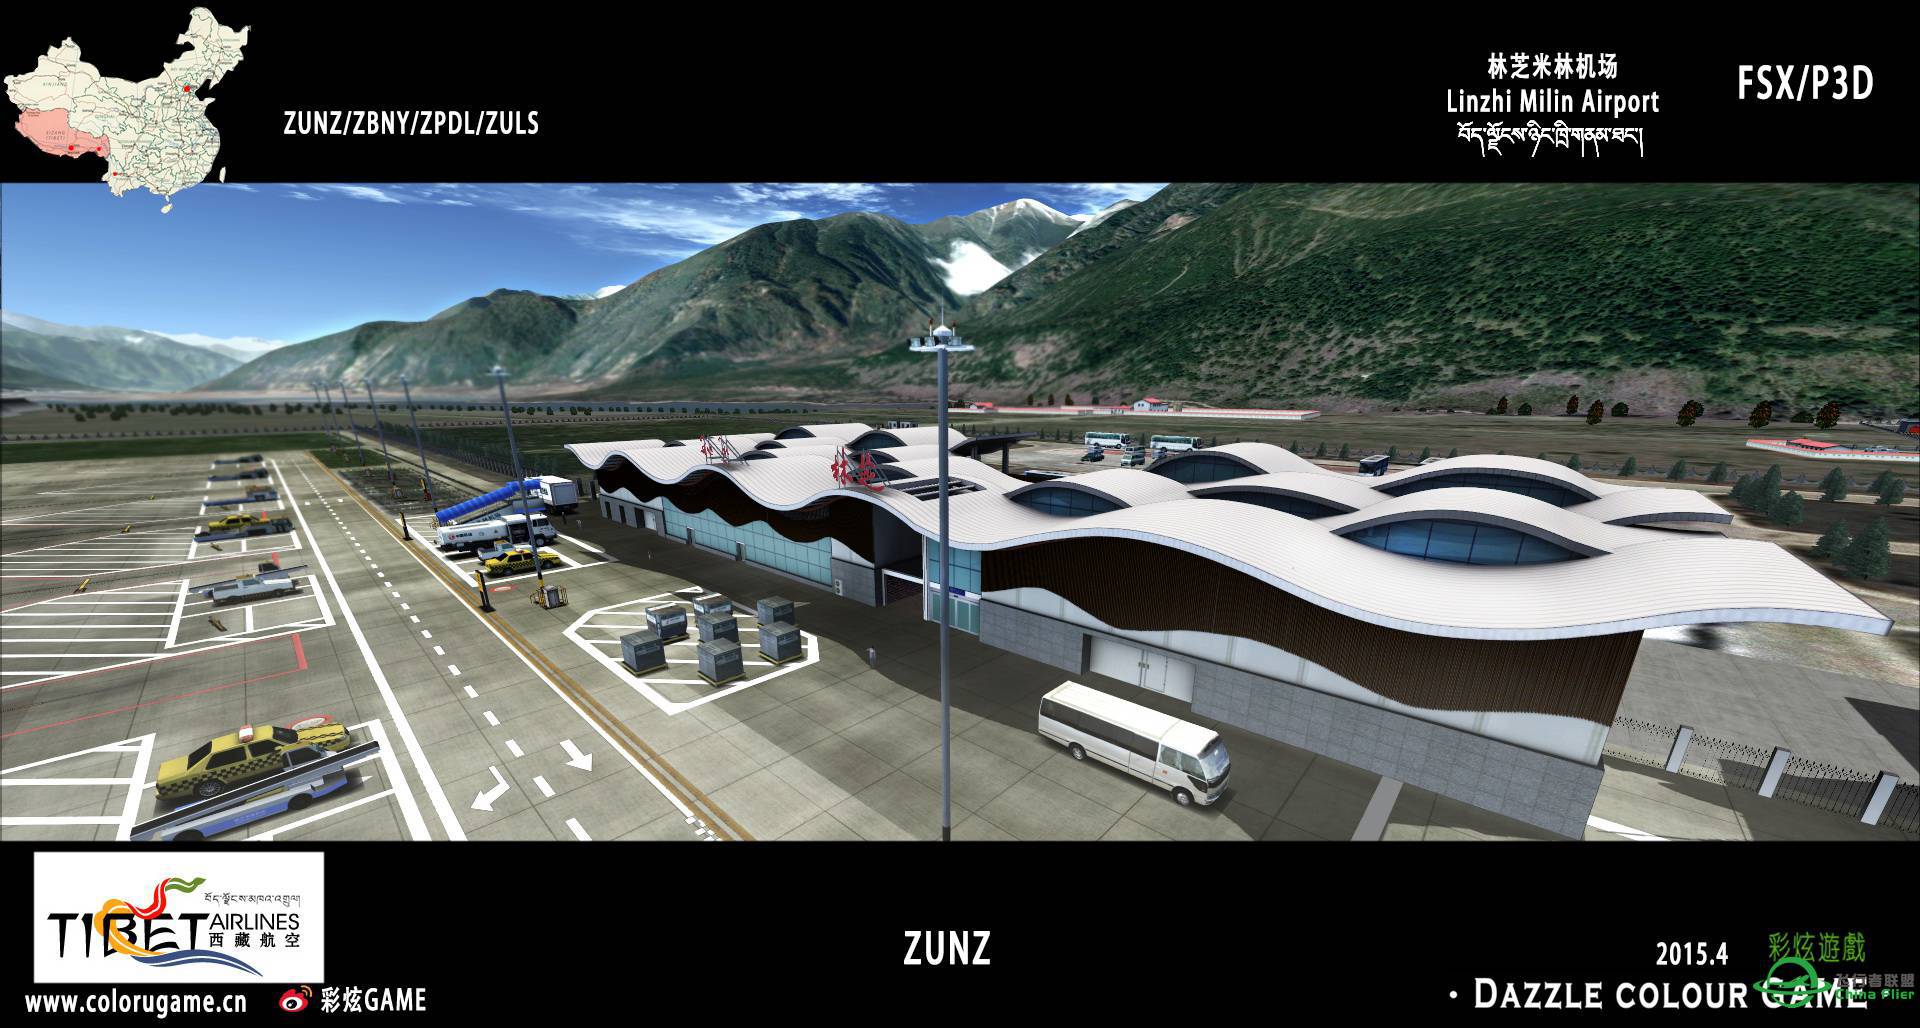 彩炫地景：林芝米林机场（ZUNZ）正式发布！-1911 